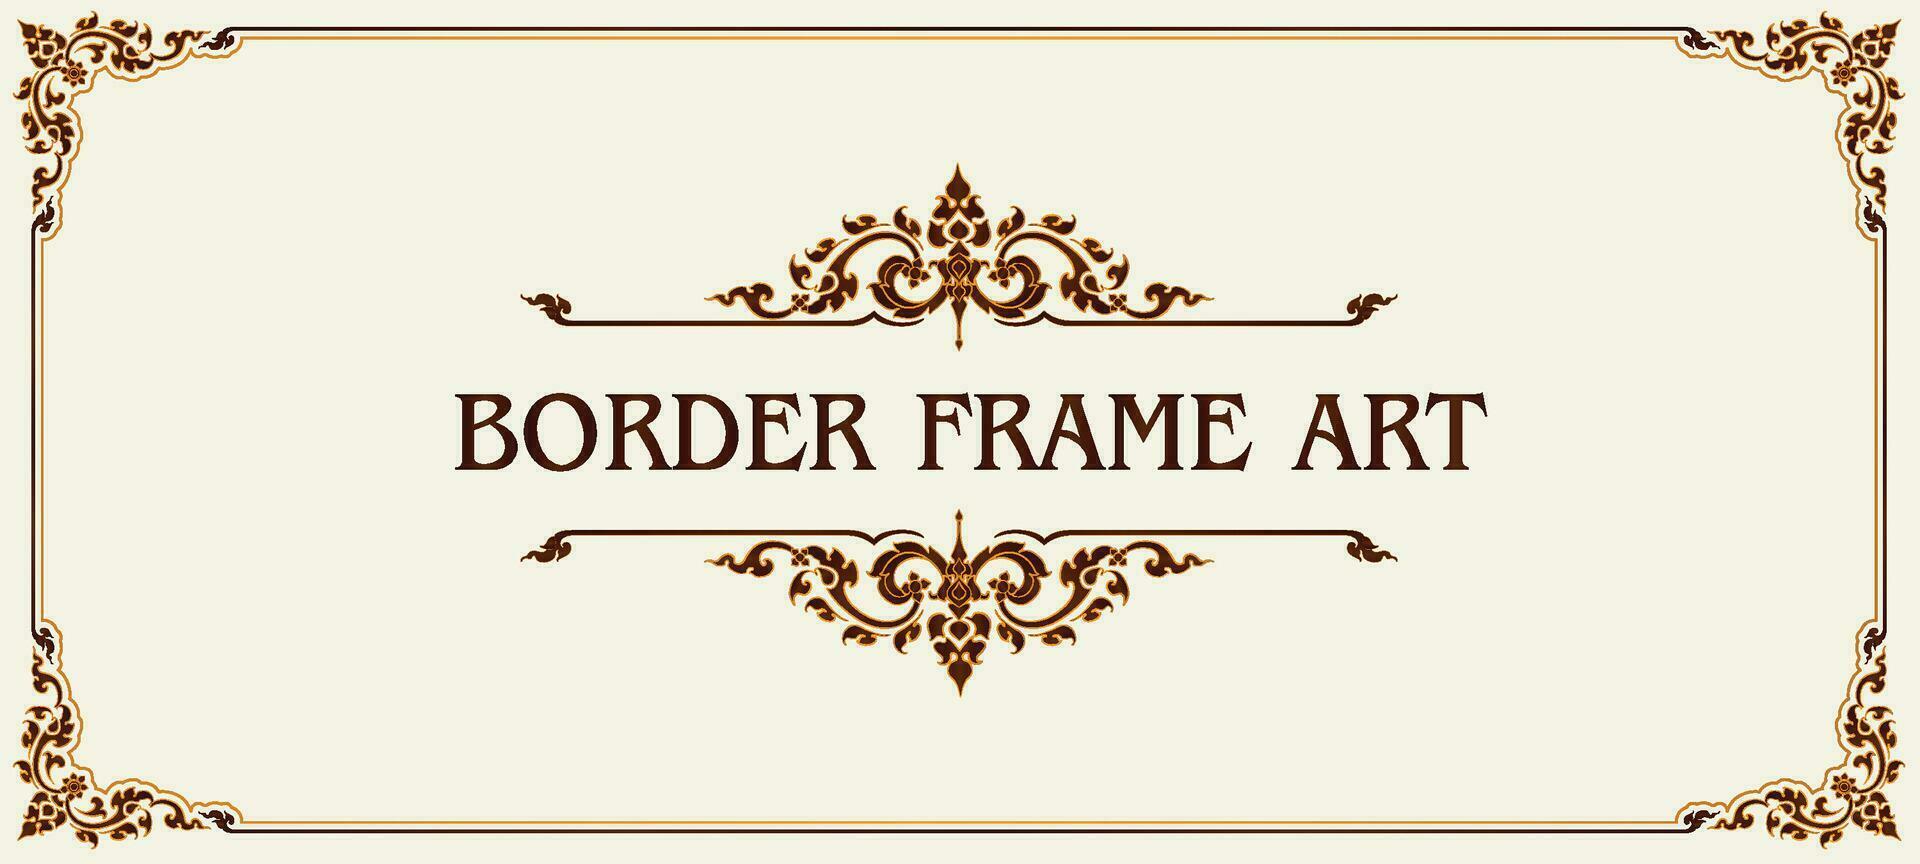 Decorative vintage floral frames and Certificate border vector